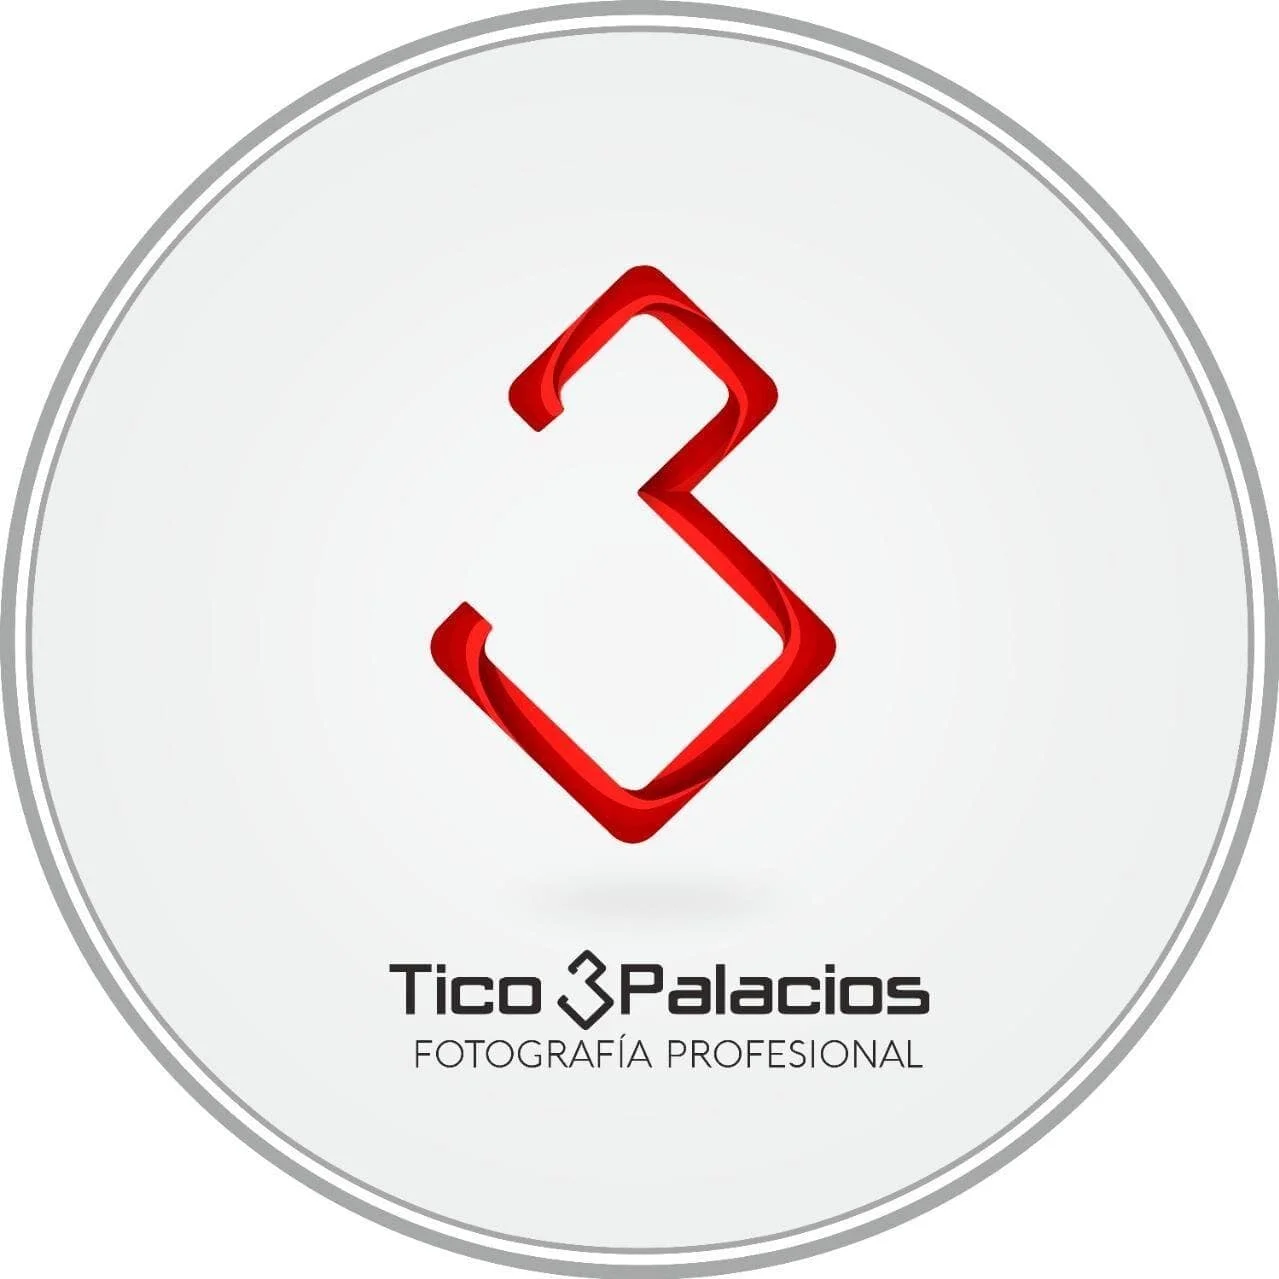 Tico 3palacios-10027